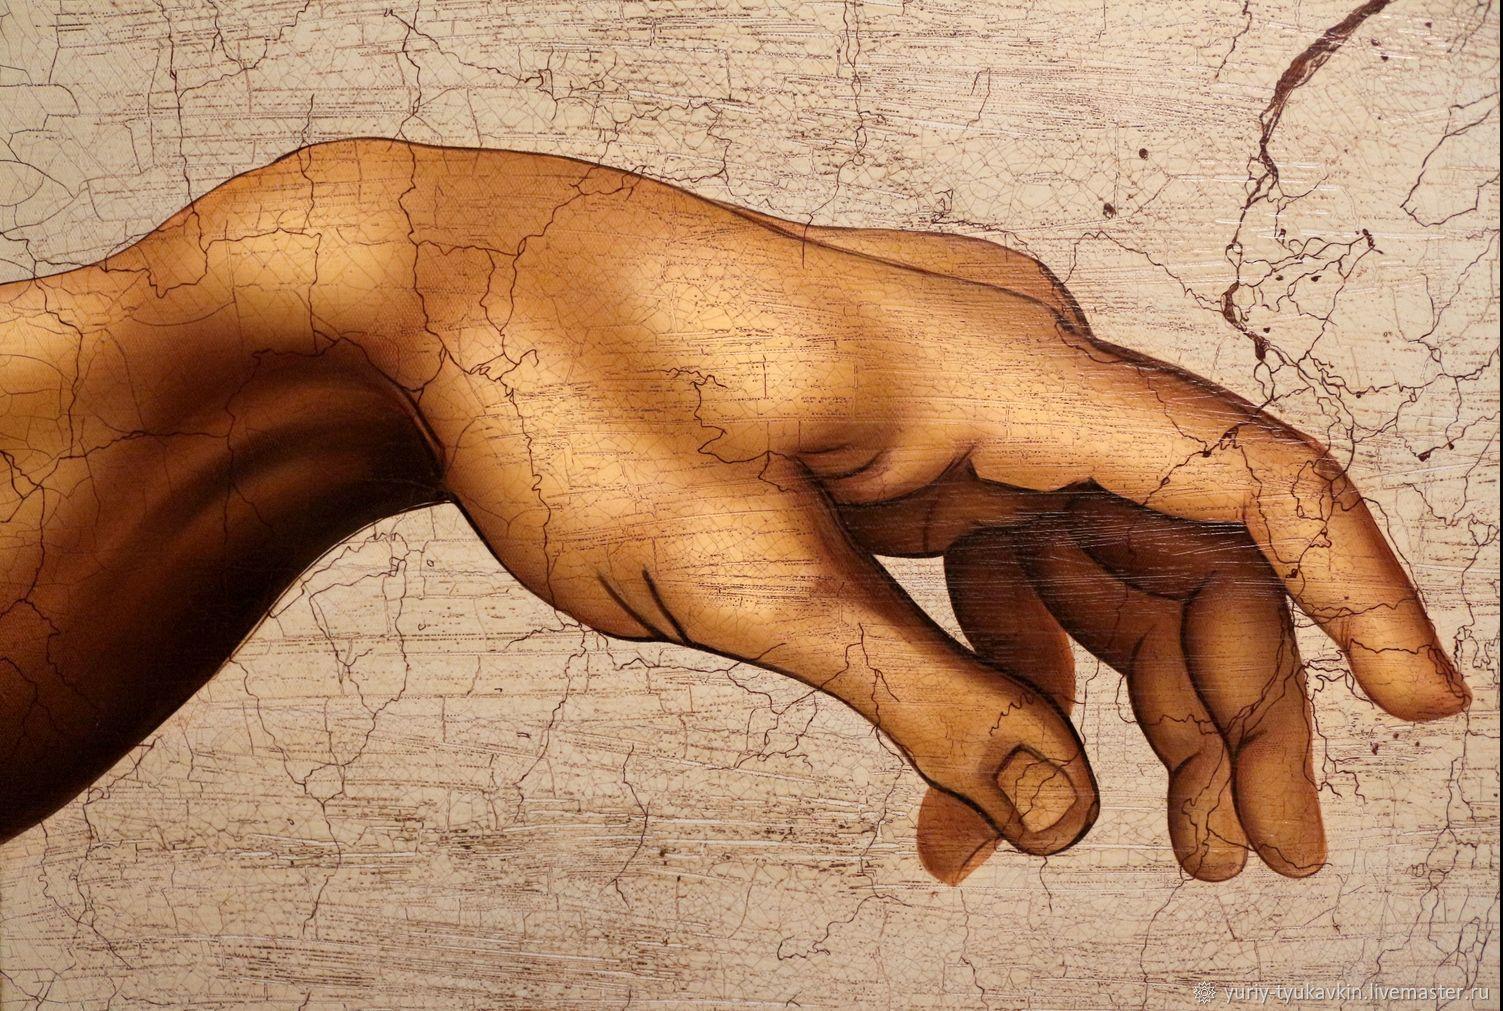 Красивые картины рук. Микеланджело Сотворение Адама. Микеланджело Буонарроти Сотворение Адама руки. "Сотворение Адама" Микеланджело, 1511. Леонардо да Винчи Сотворение Адама.